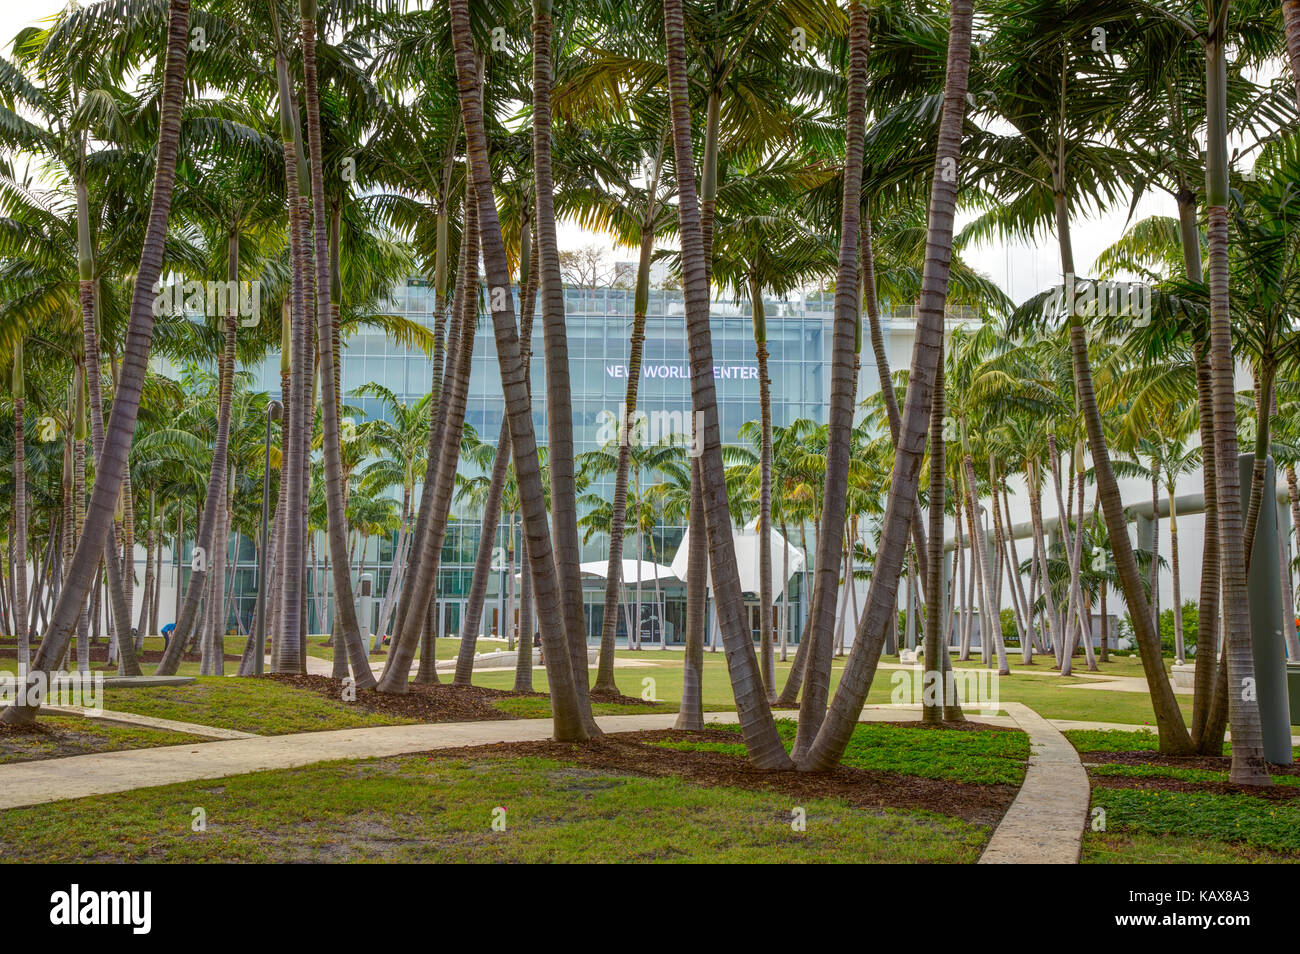 Miami Beach, en Floride. centre nouveau monde, South Beach. Banque D'Images